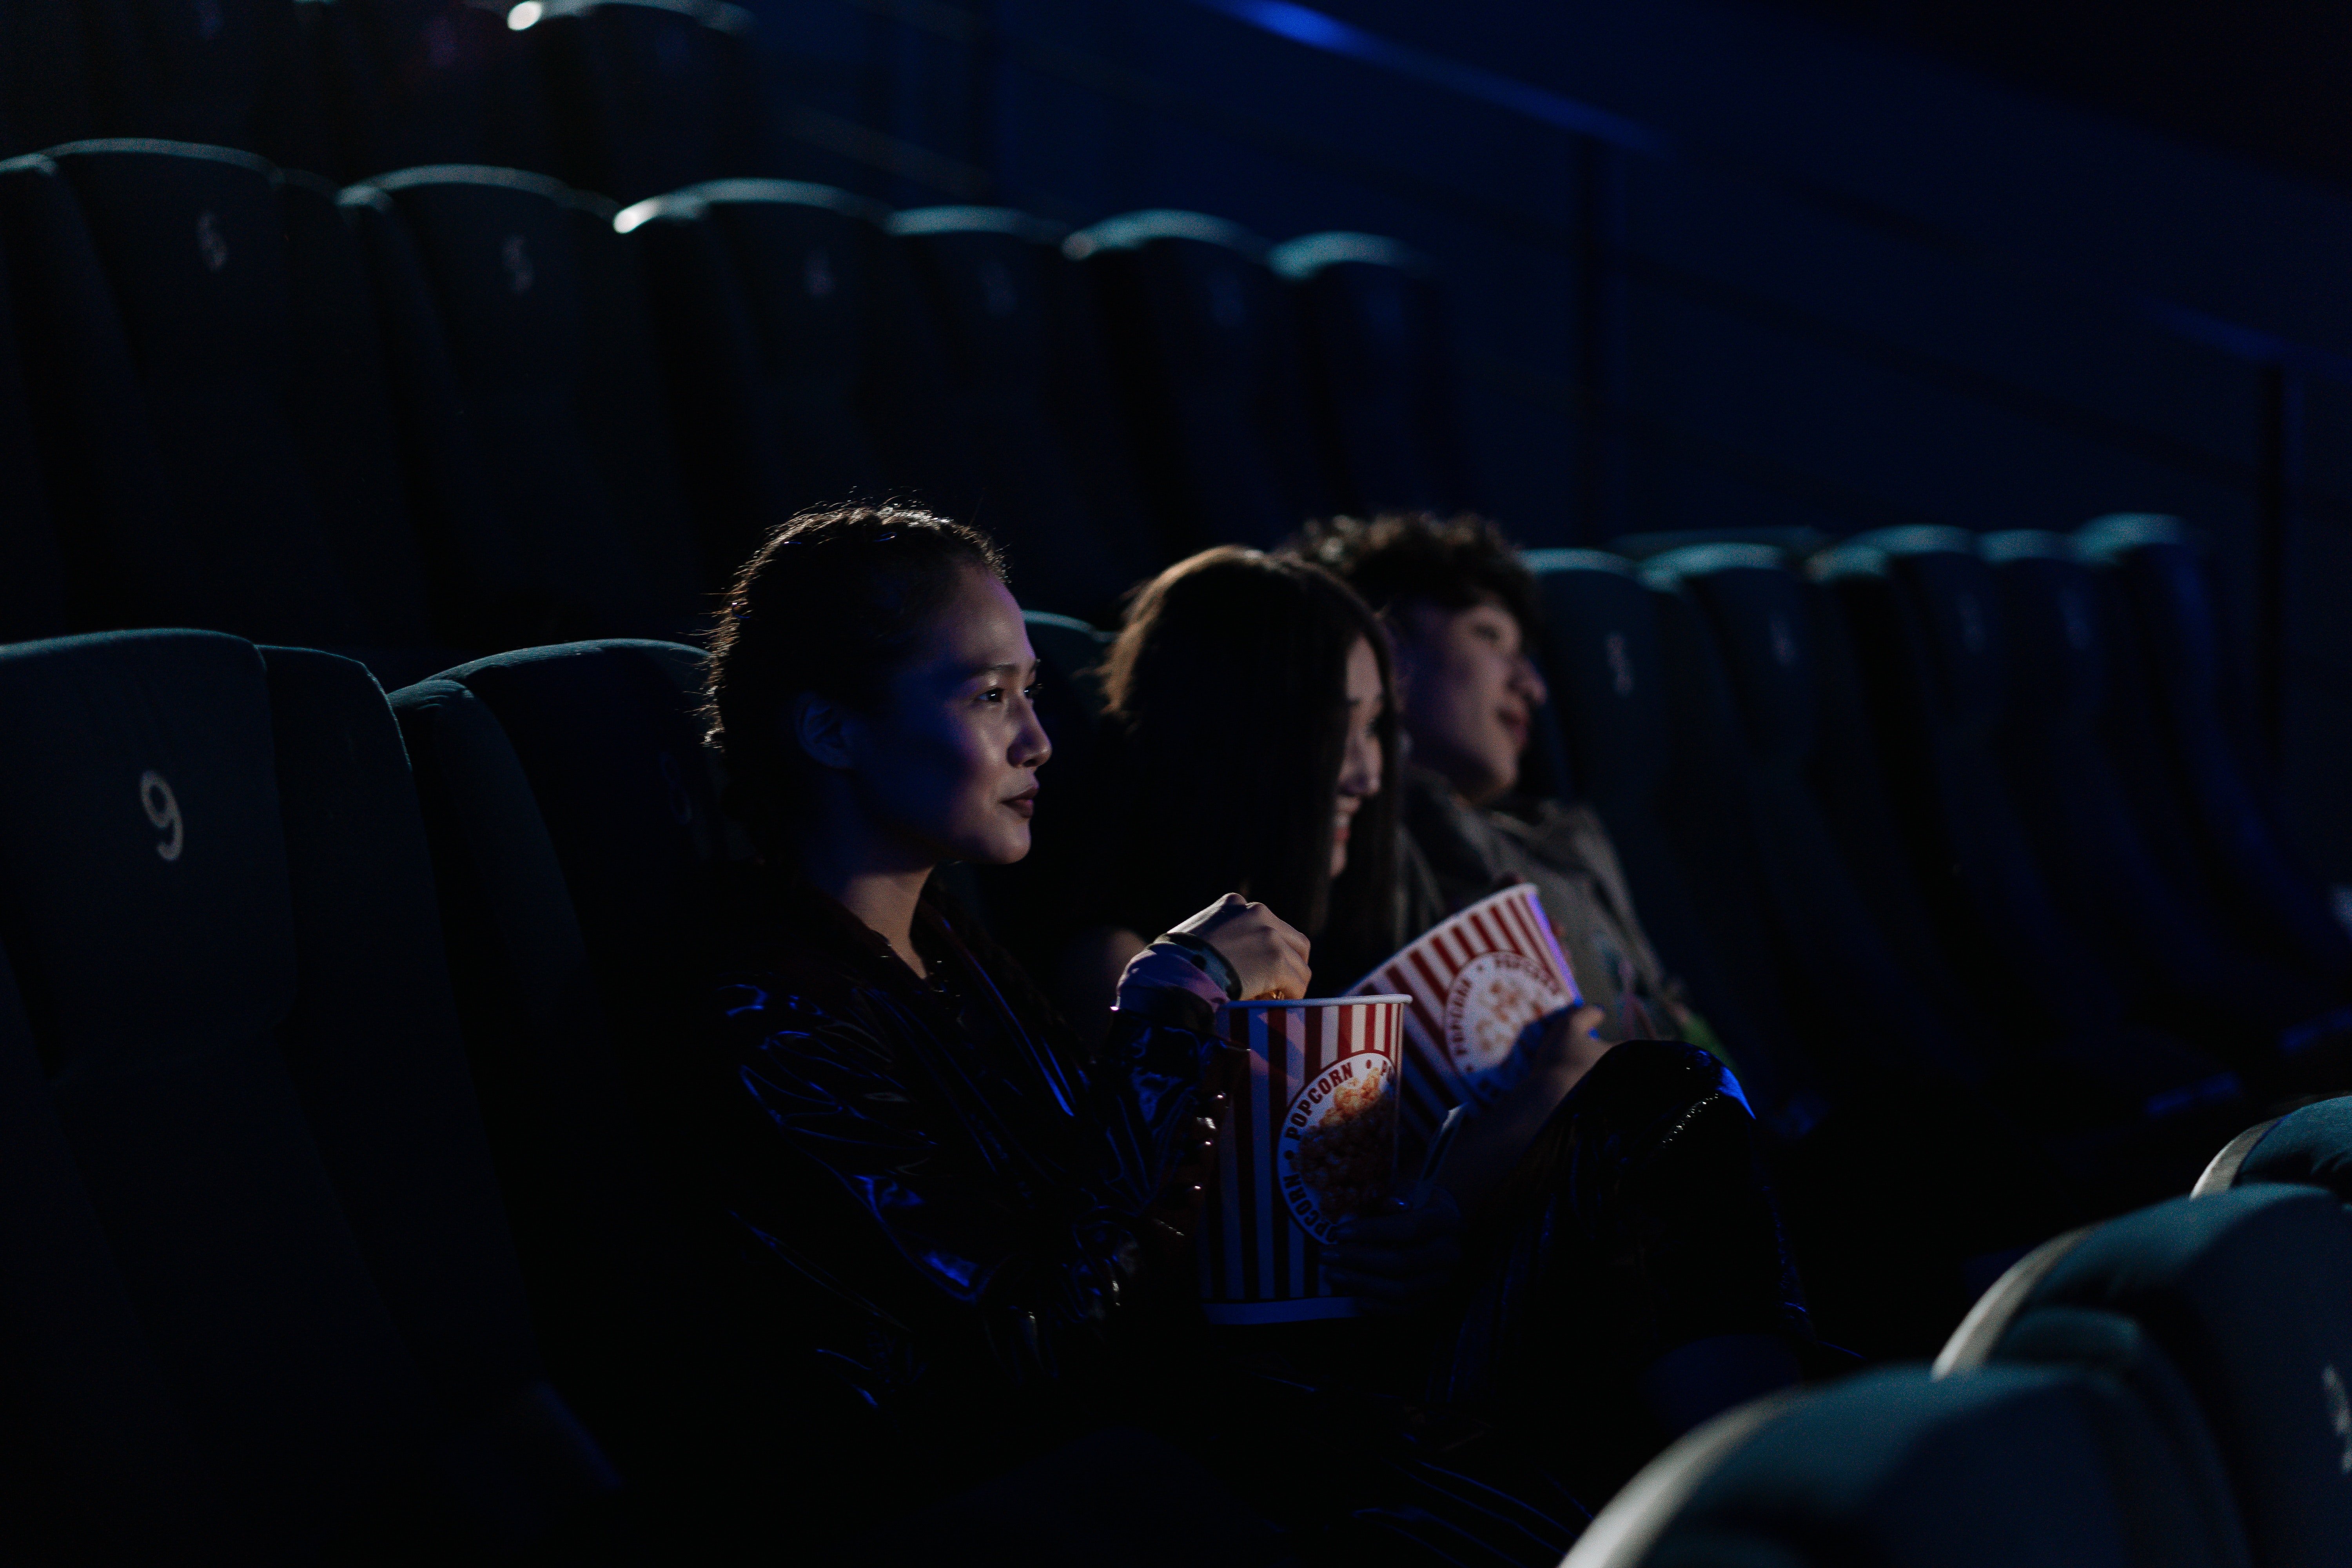 Vuelve la Fiesta del Cine 2022 este octubre con entradas a 3,50 euros